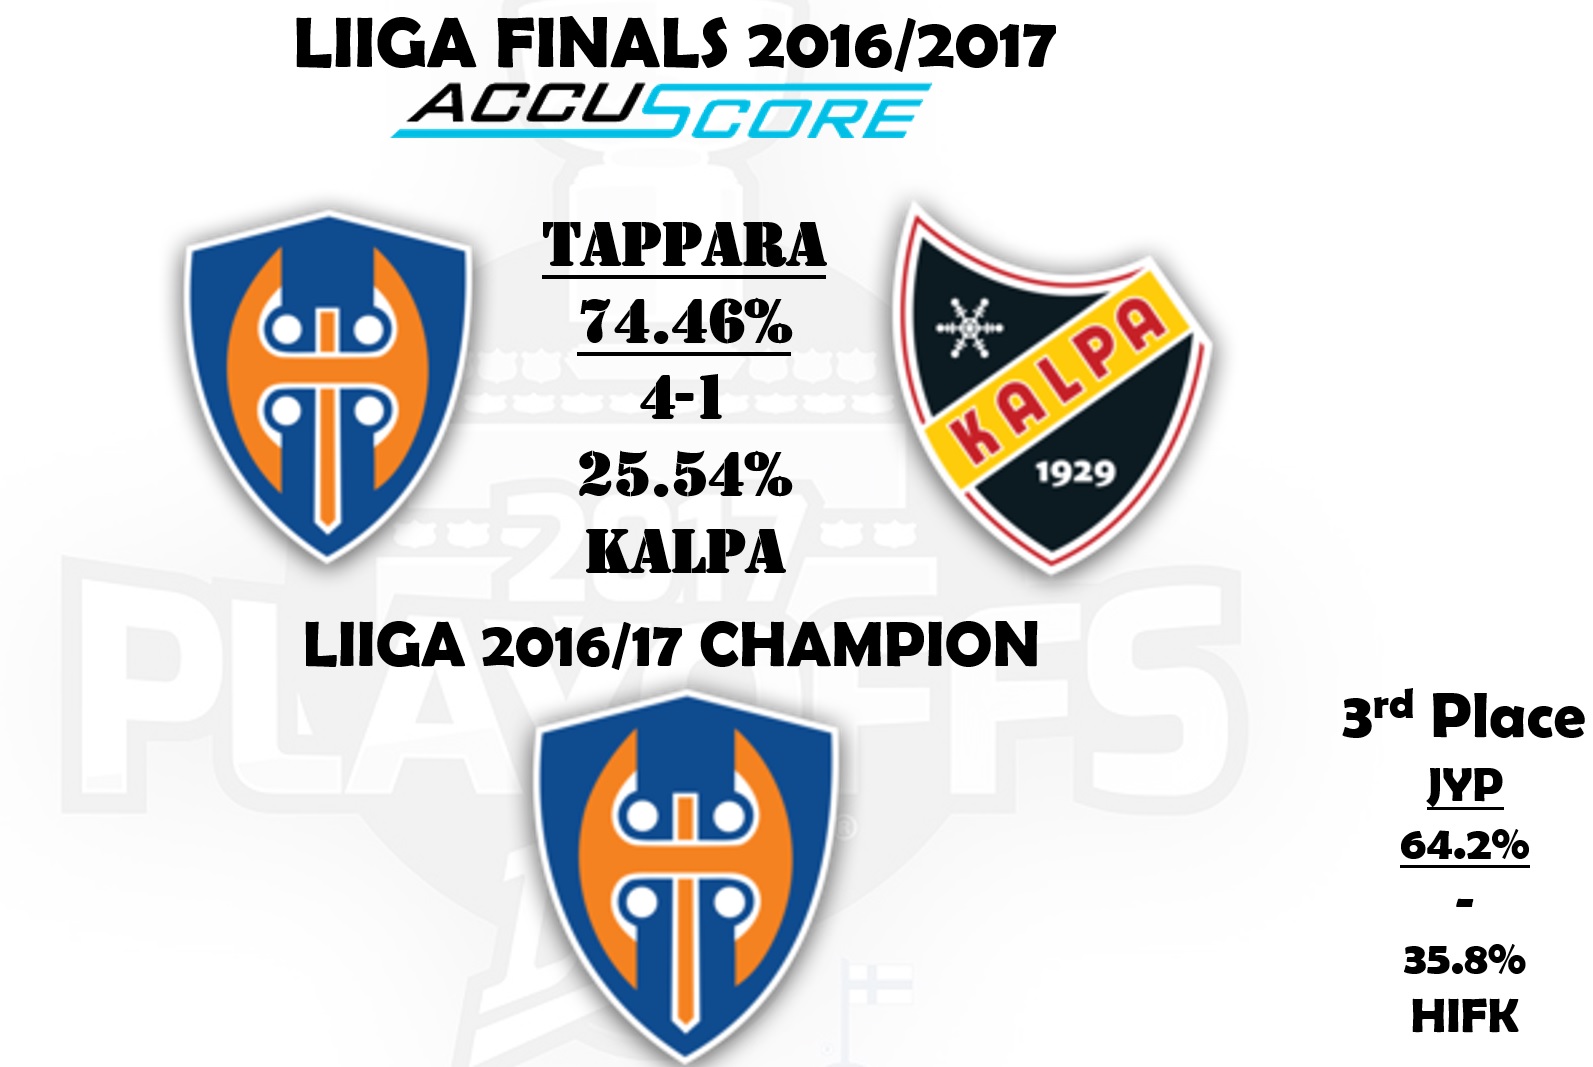 Accuscore Finnish Liiga Finals 2016/17 prediction